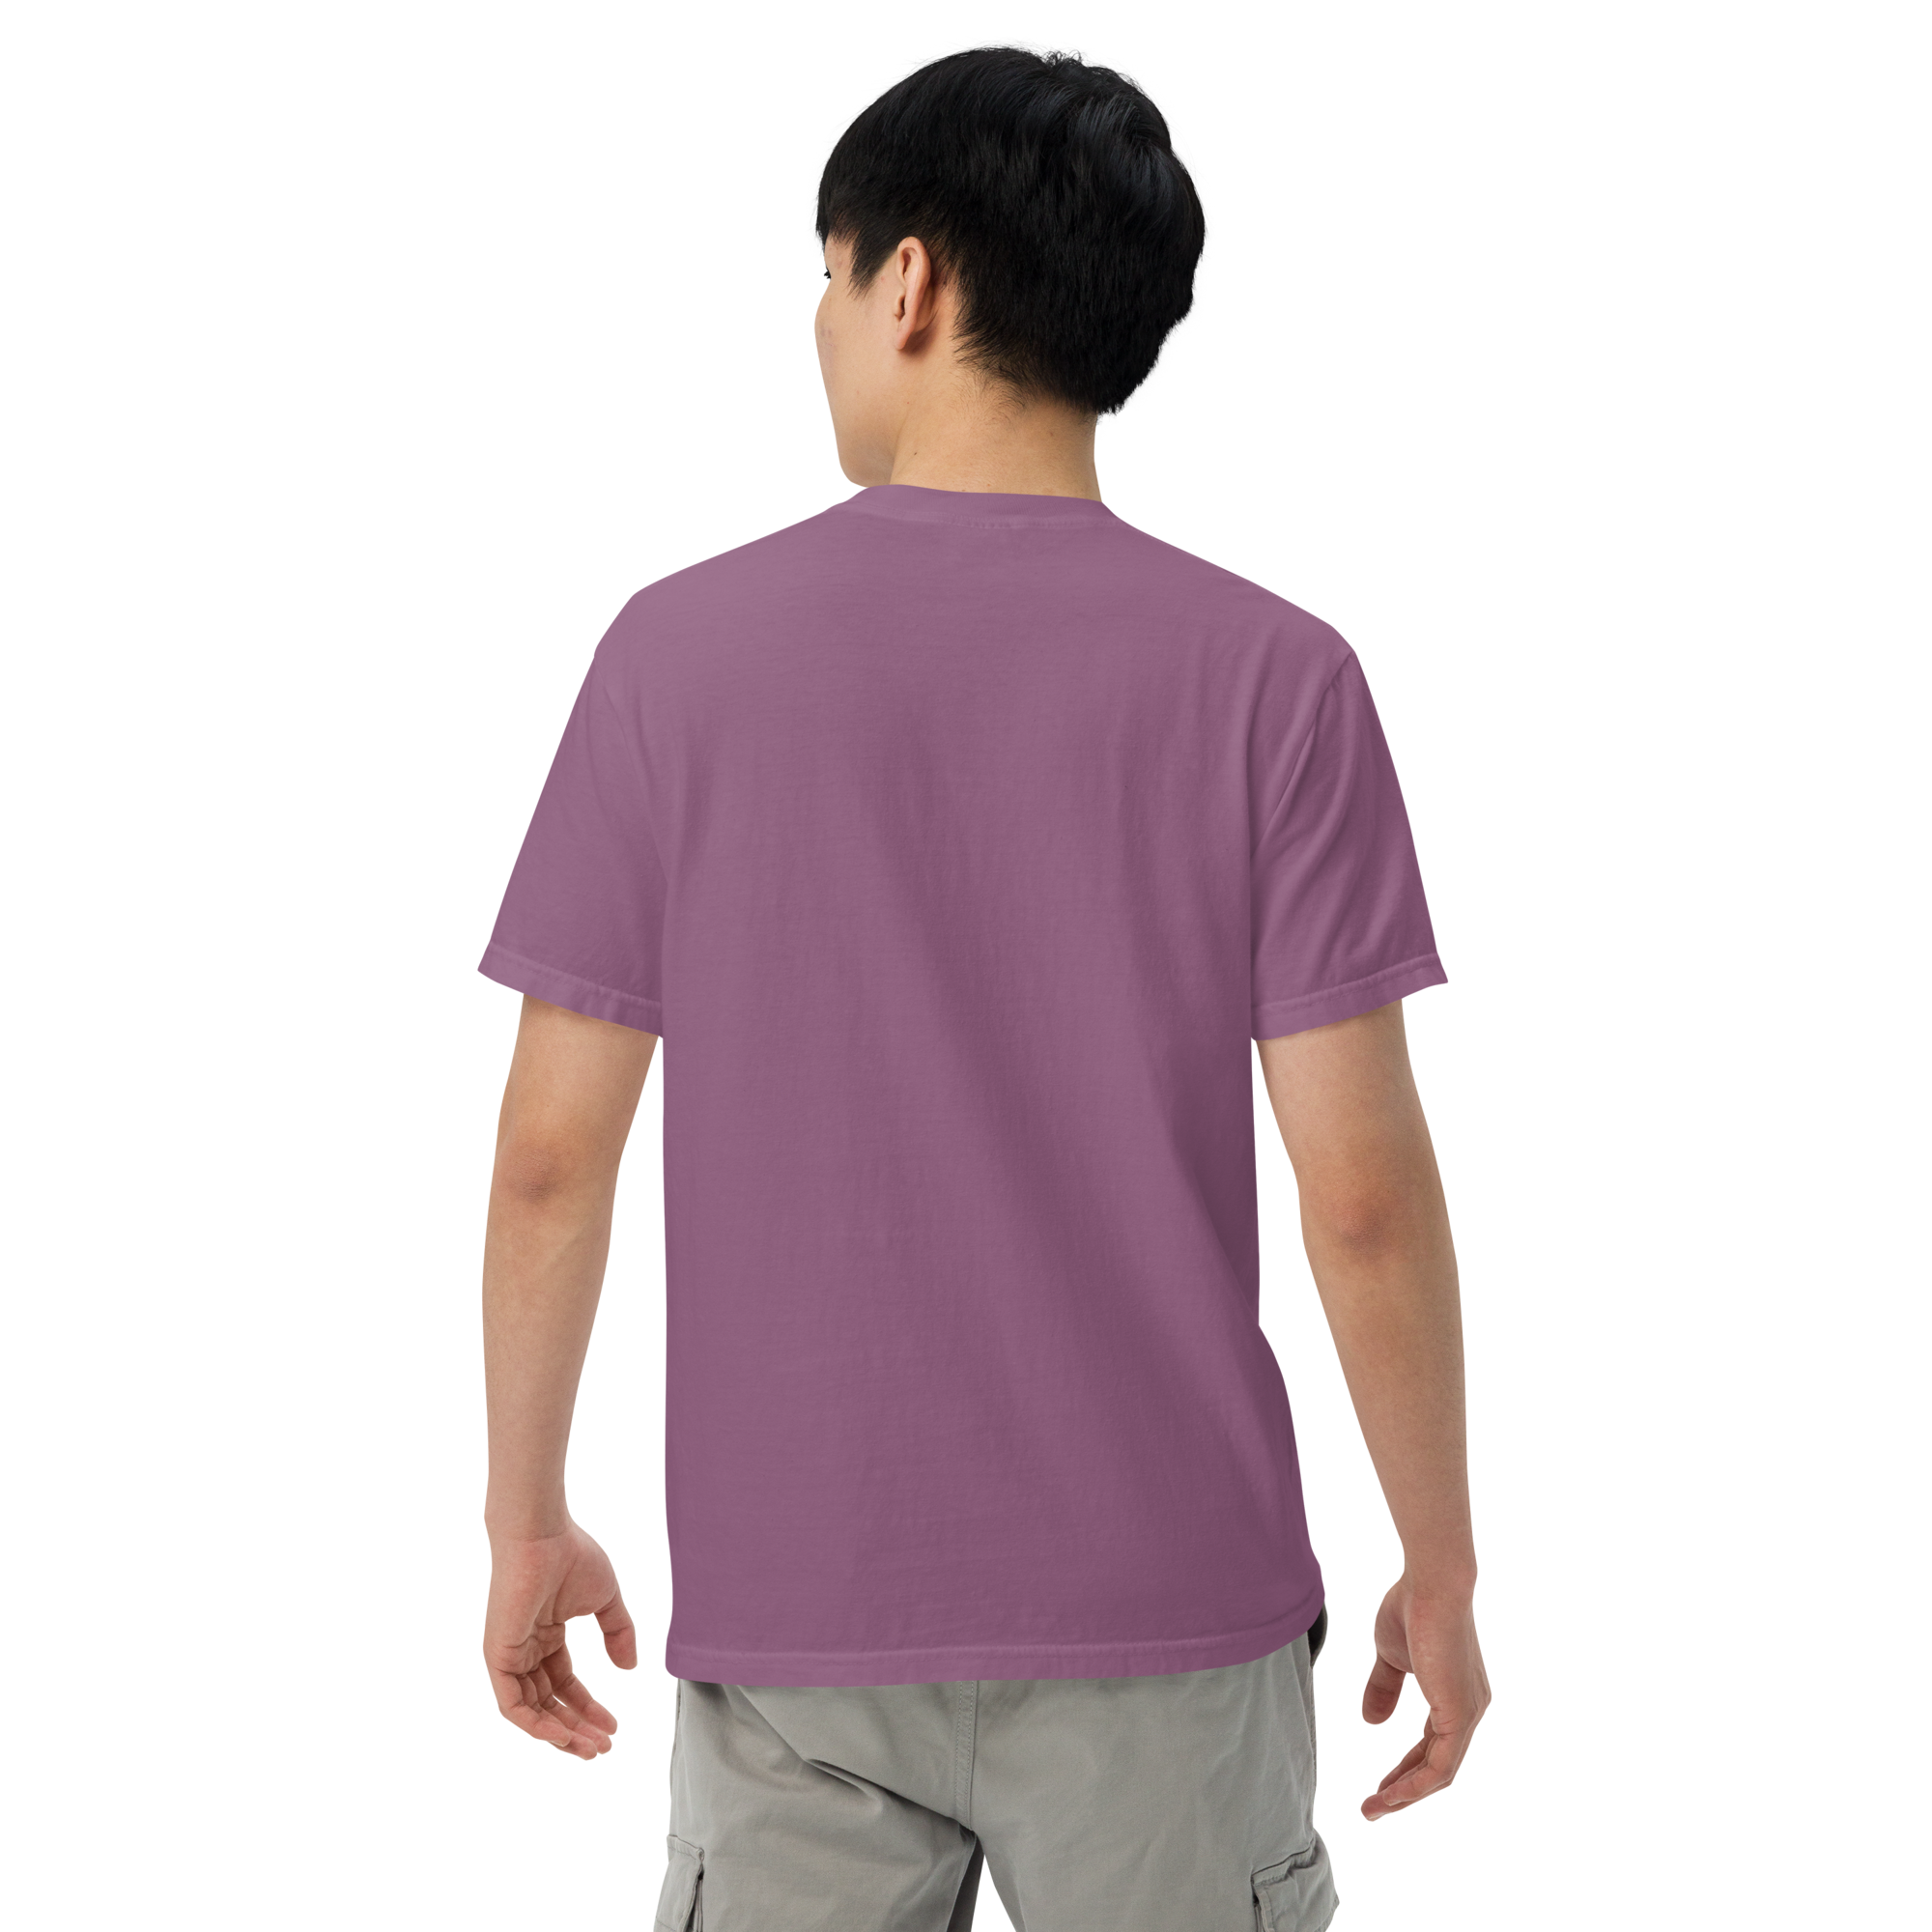 Dickson Street Front Print Men’s Garment-Dyed Heavyweight T-Shirt